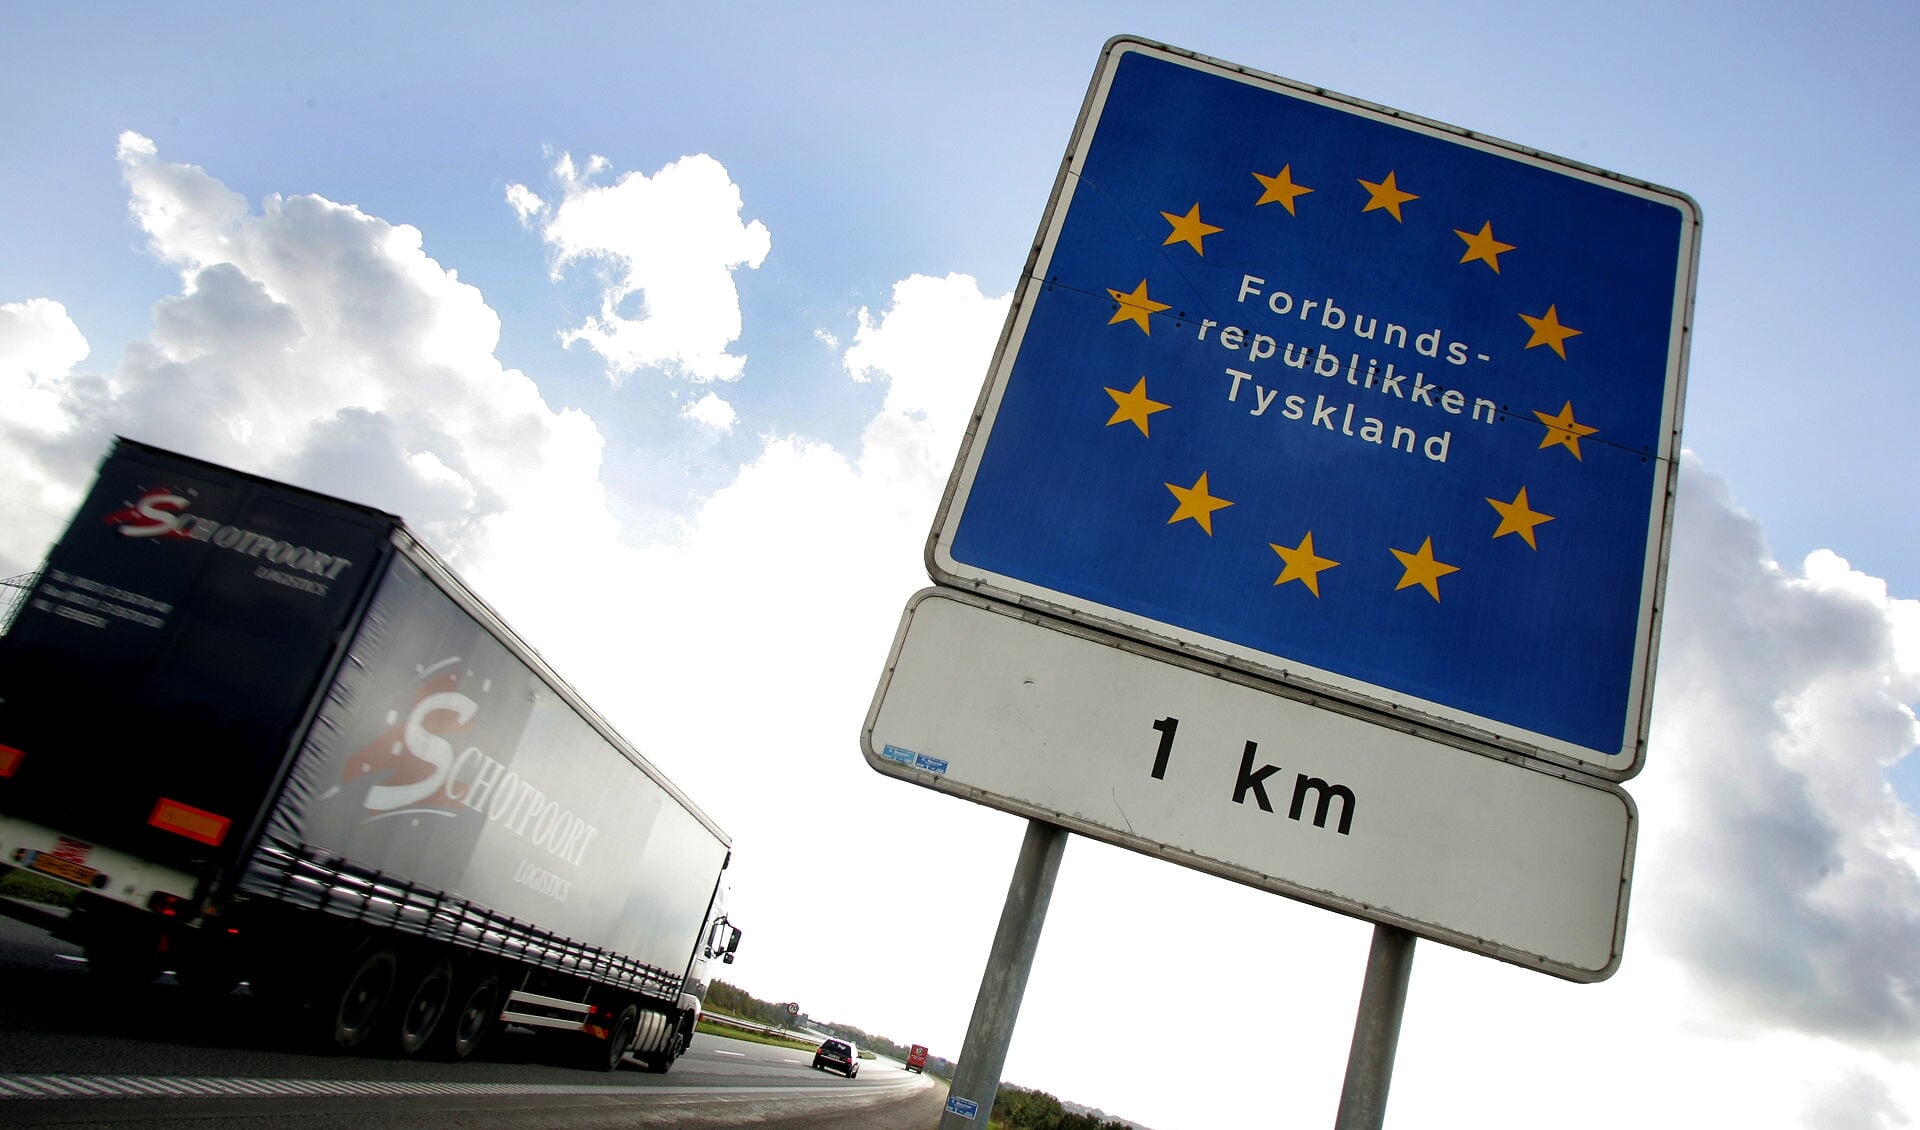 Fortsætter smittetallet at stige med den nuværende fart i Tyskland, så risikerer Danmark at ændre rejsevejledningen for hele Tyskland til, at alle unødvendige rejser frarådes. 